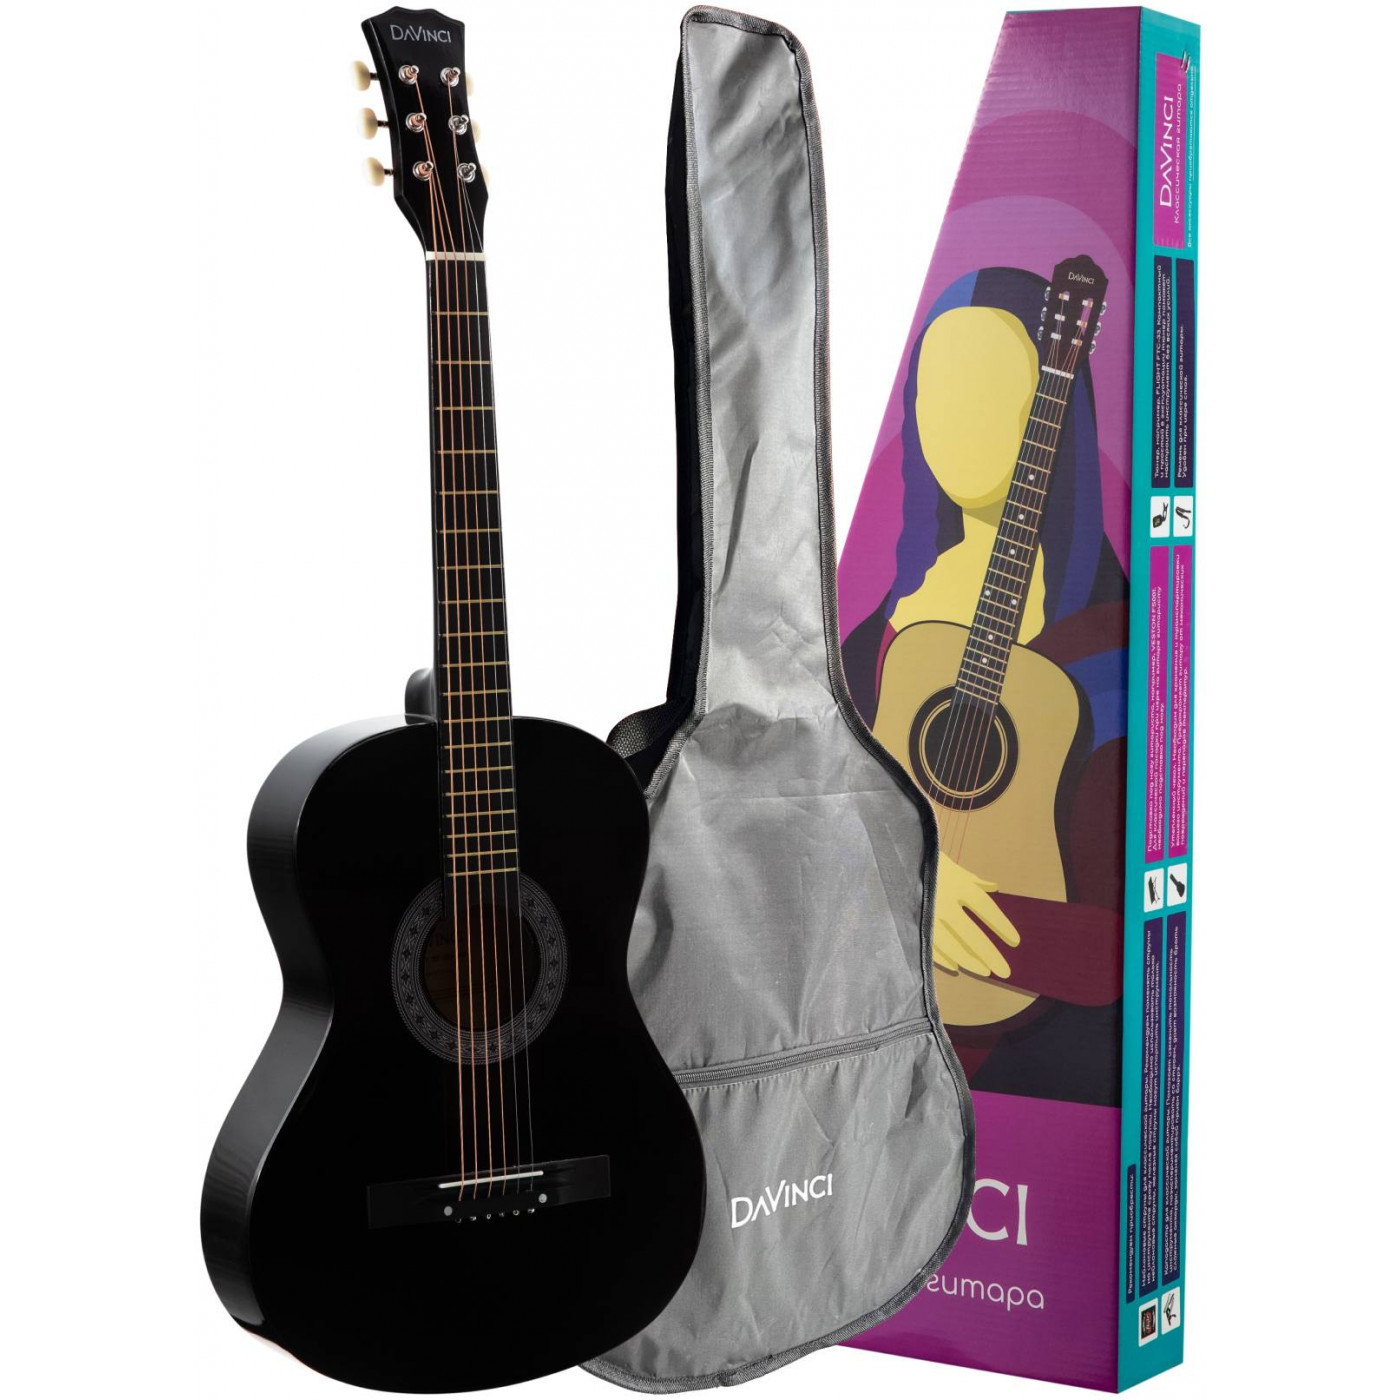 Акустические гитары DAVINCI DF-50A BK + Bag (чехол в компл.) классические гитары ortega r121 family series чехол в комплекте